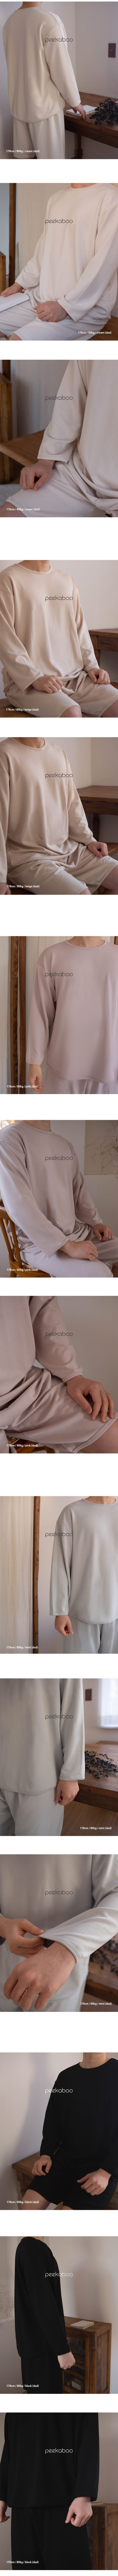 Peekaboo - Korean Women Fashion - #womensfashion - Mine Set Mom - 4